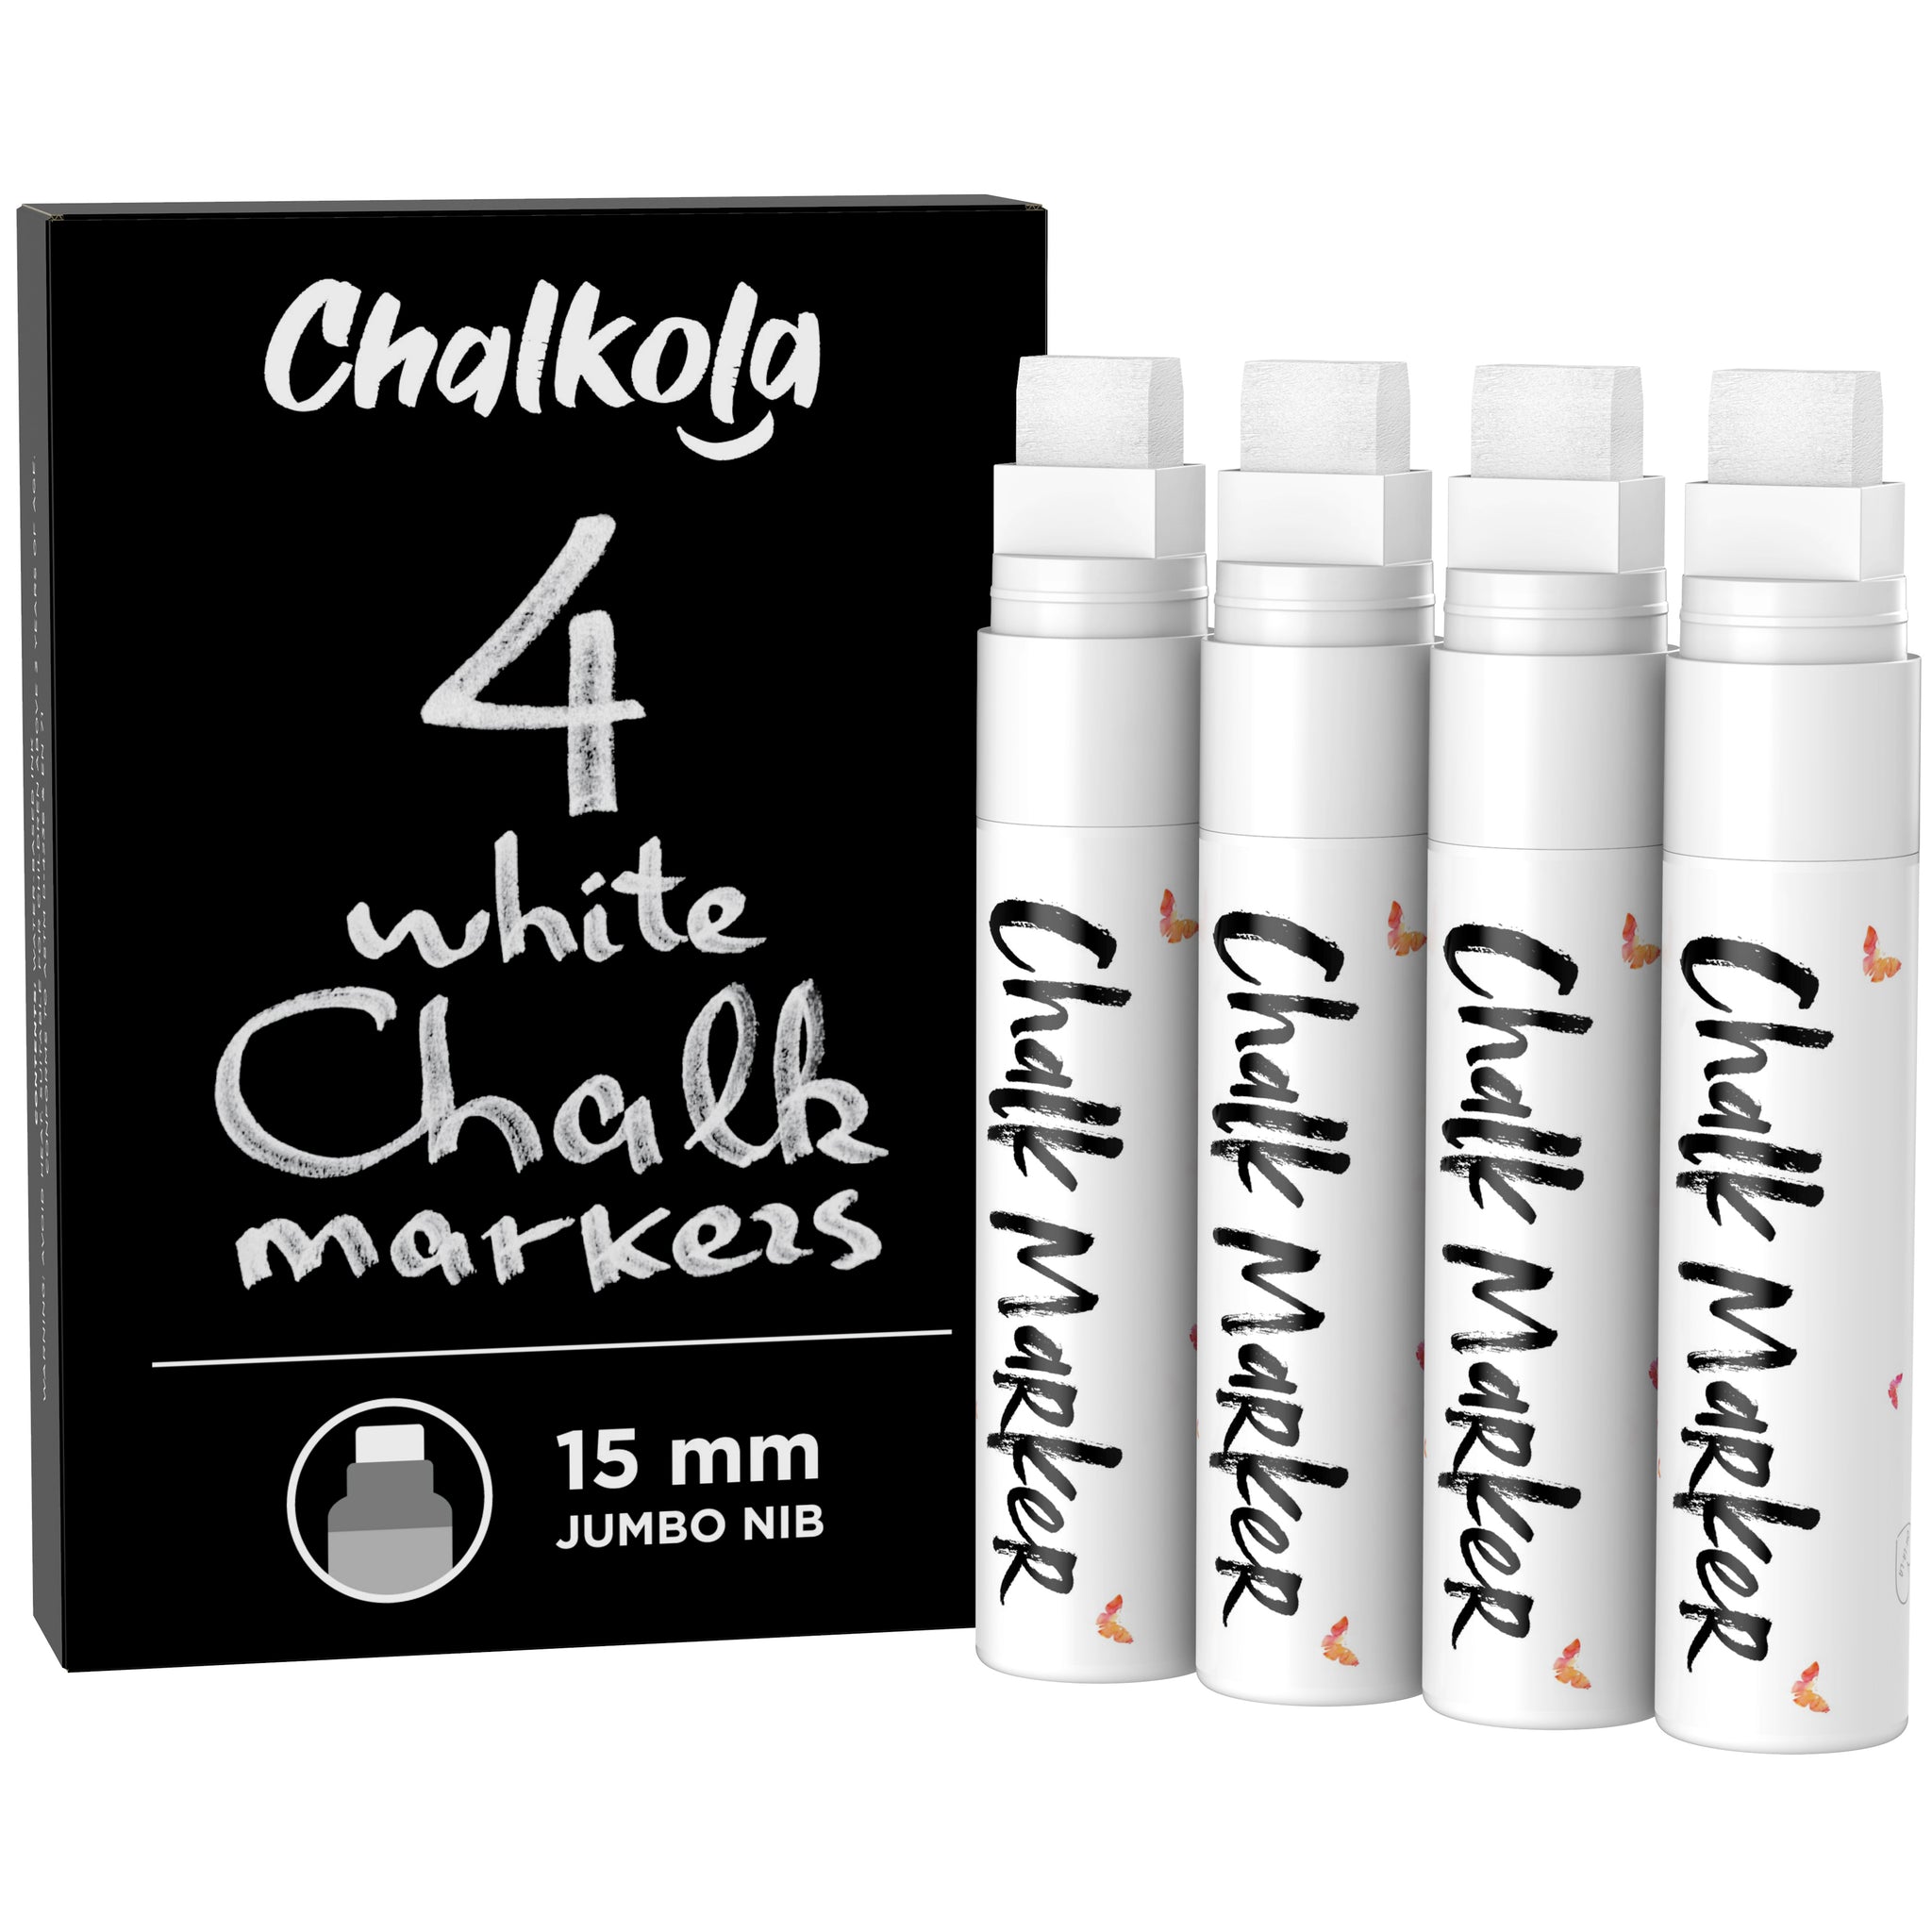 White Chalk Marker - Blackboard - Erasable Chalkboard Pen - Sale